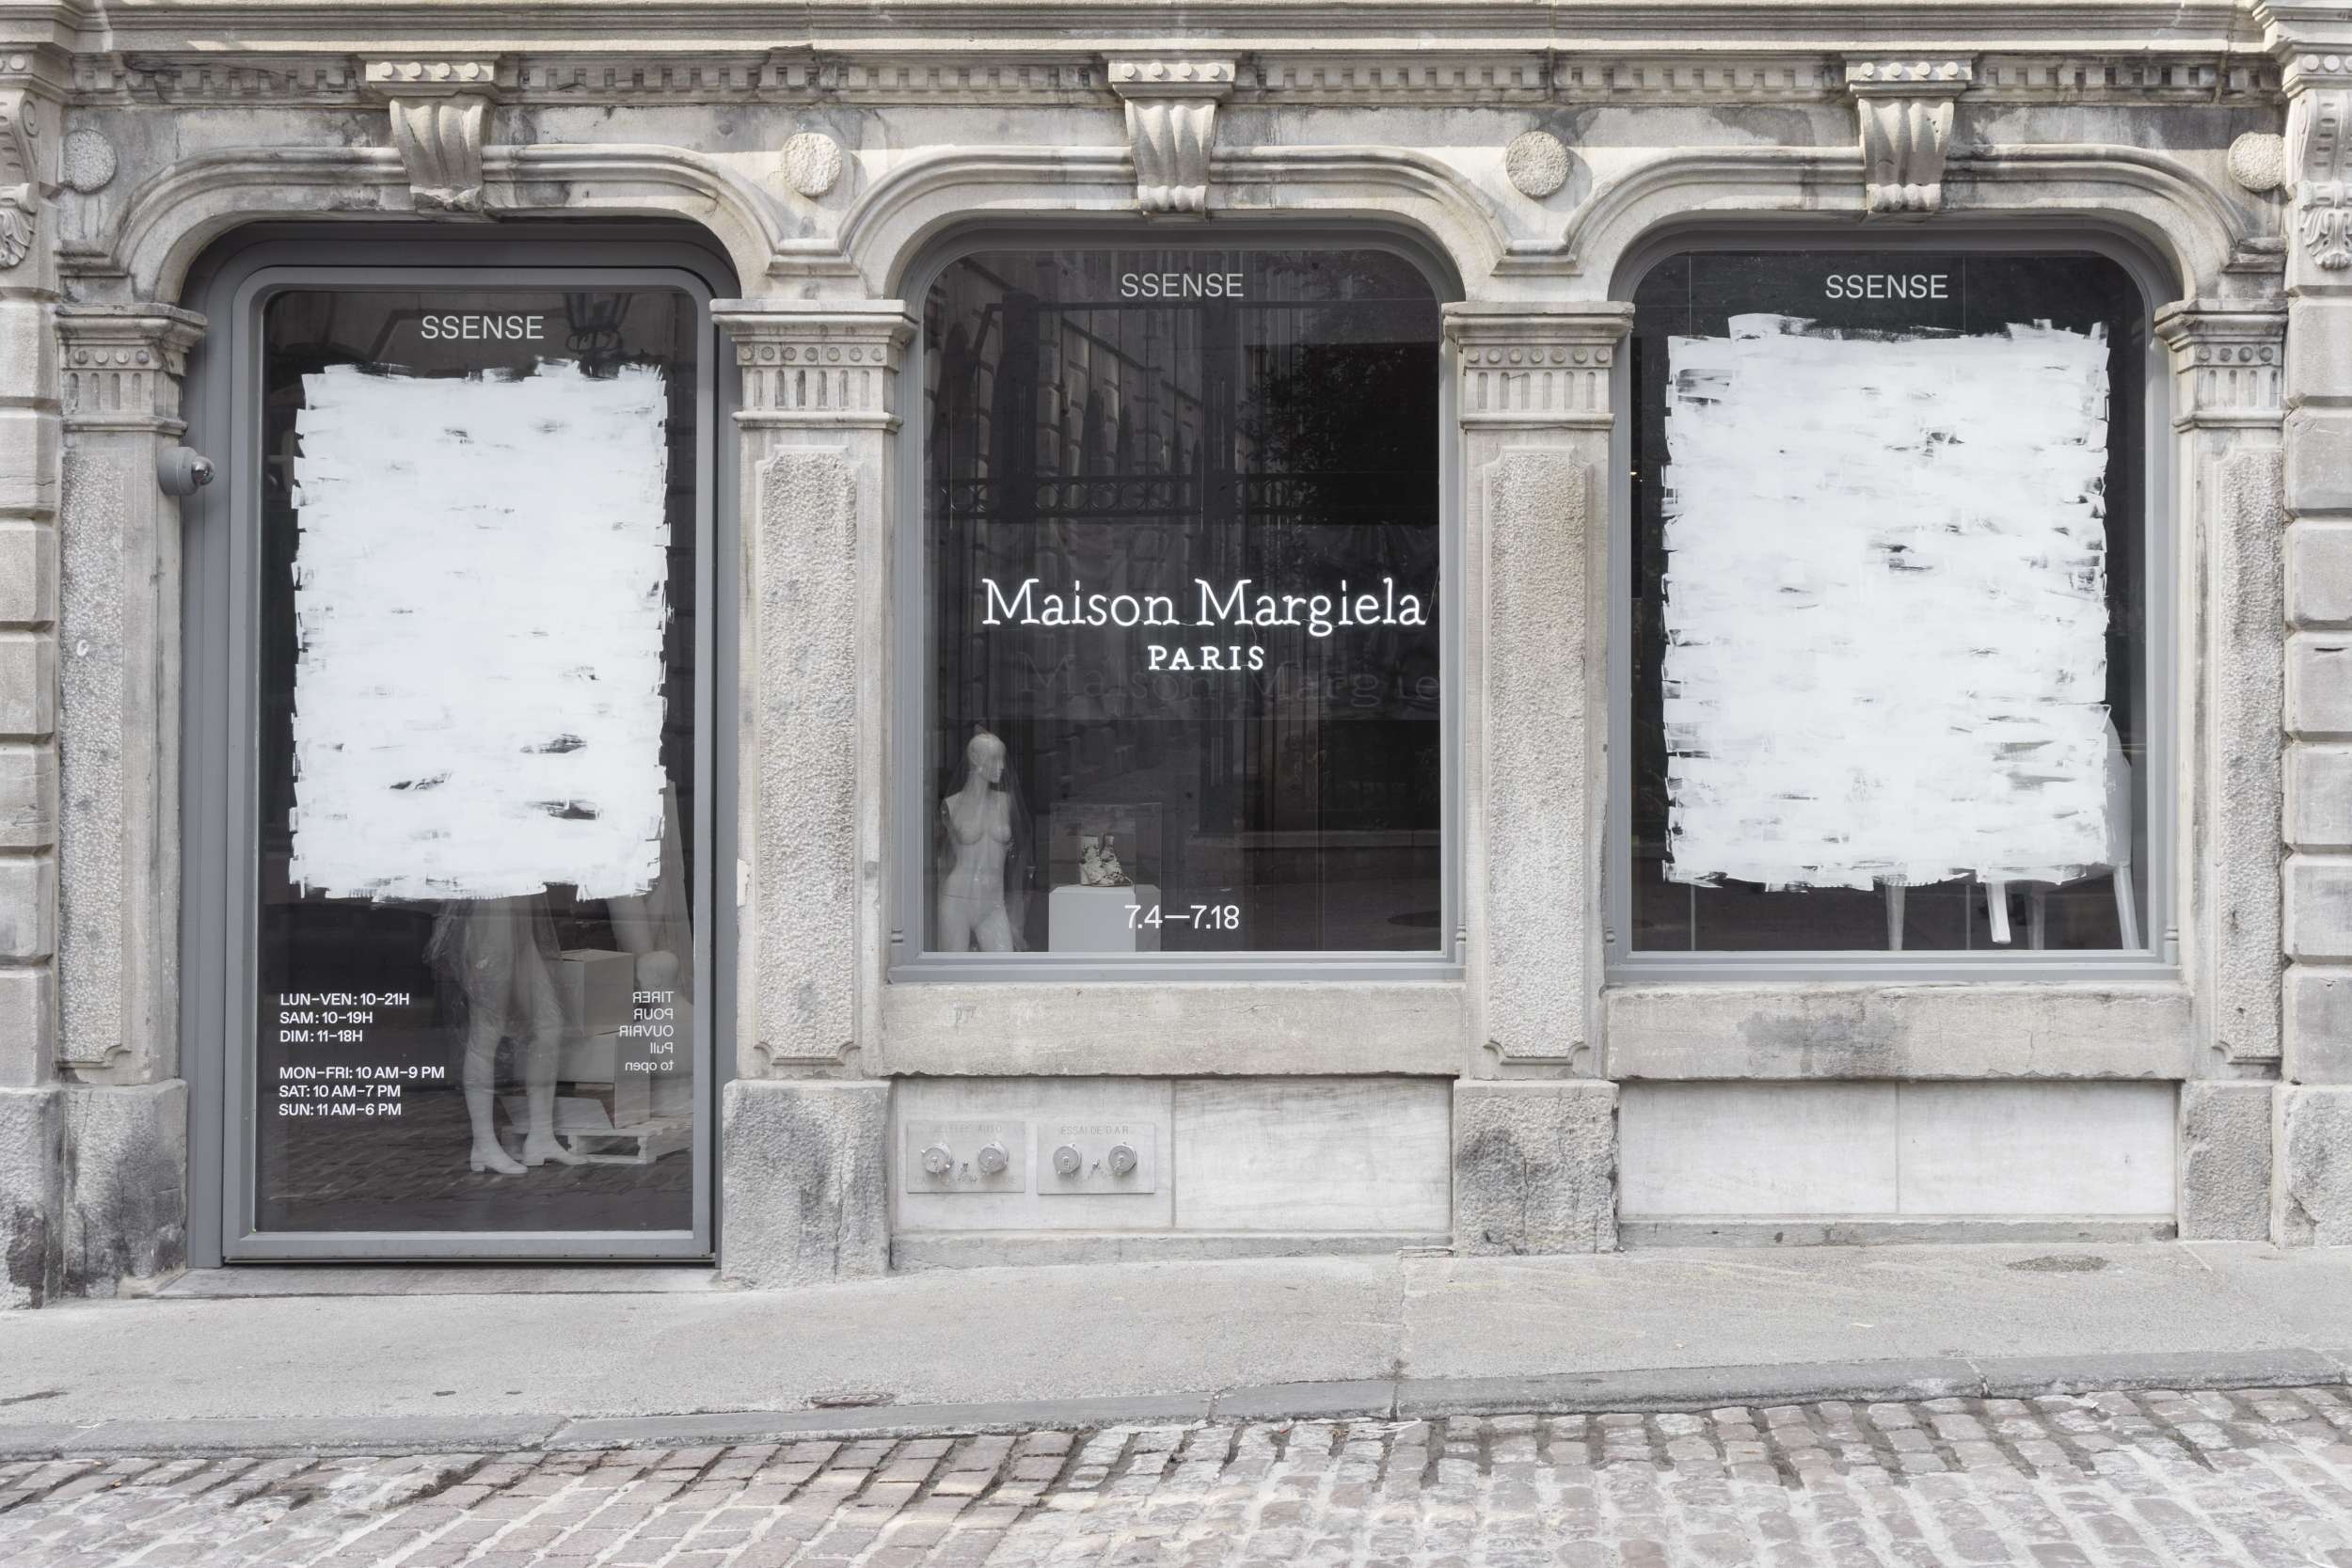 SSENSE : Maison Margiela Index